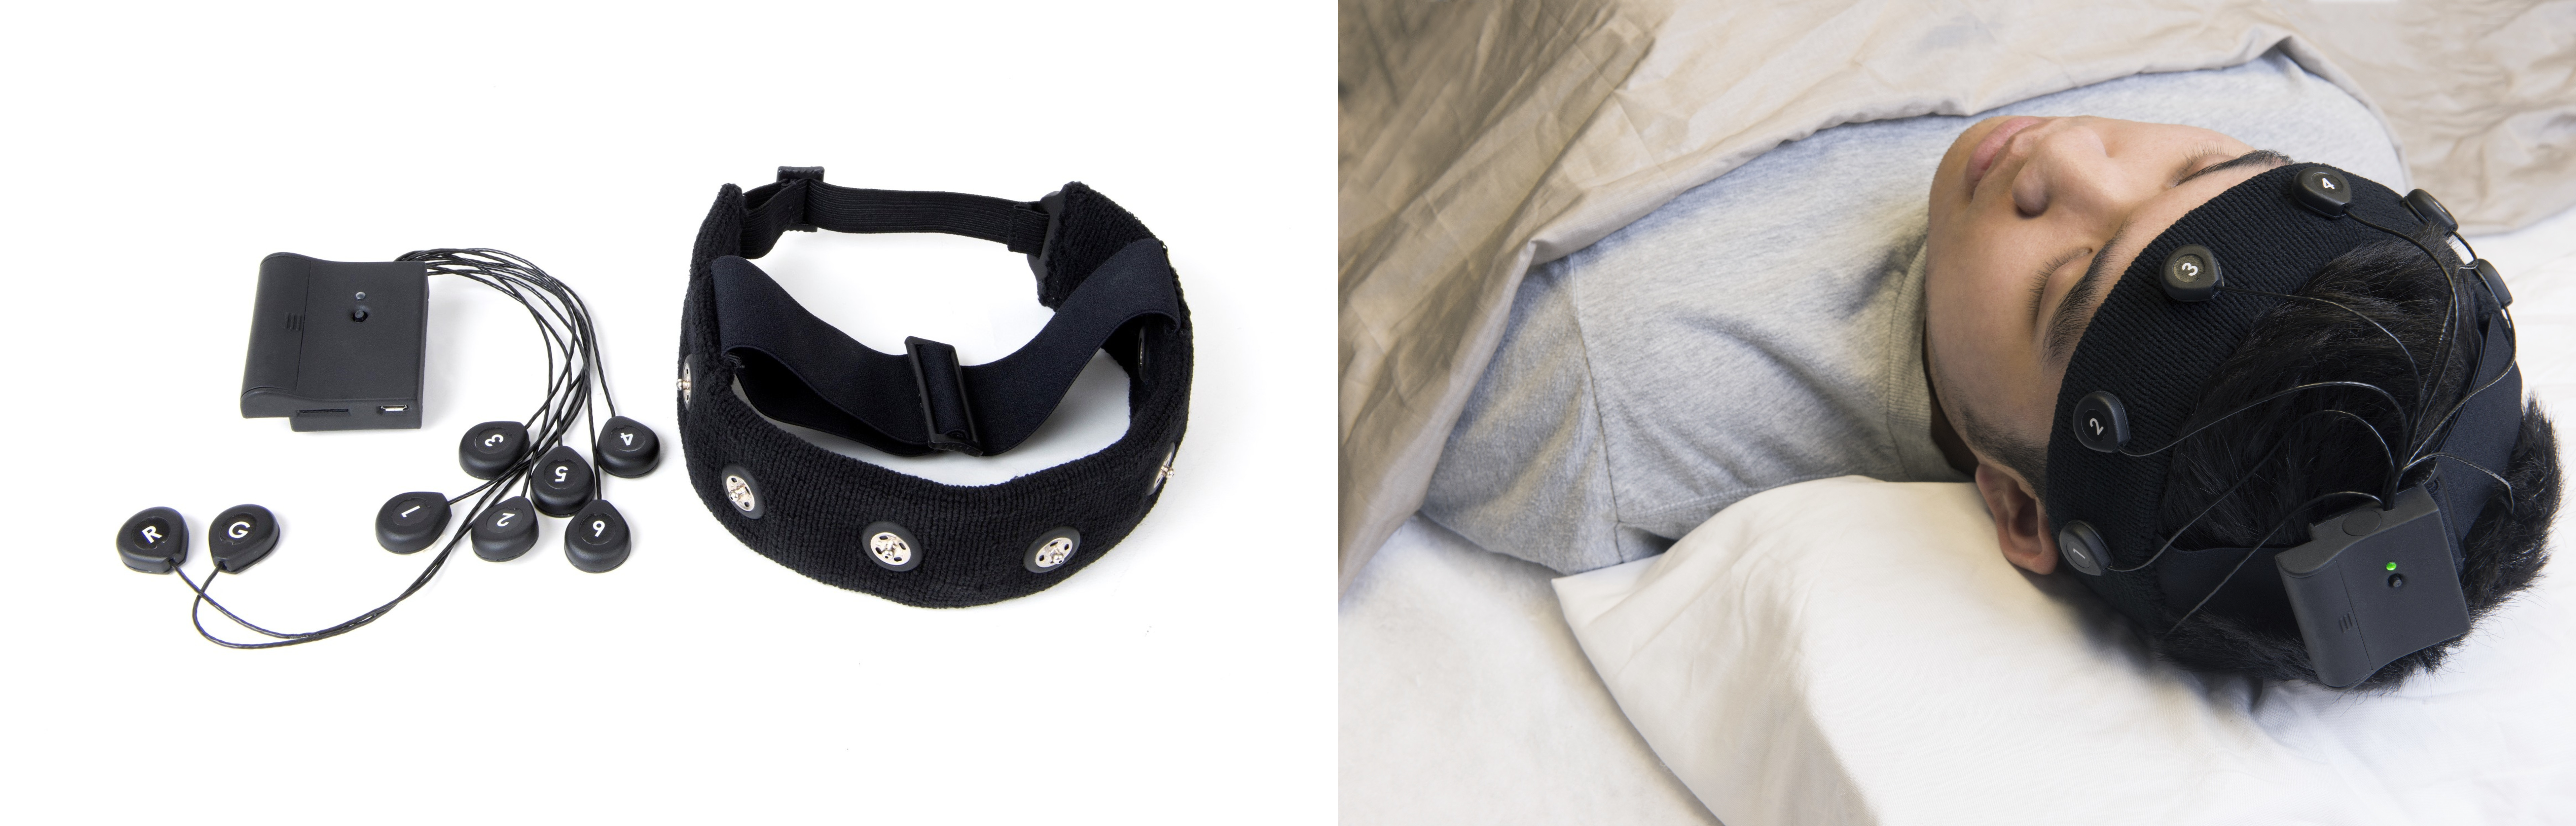 sleep-eeg-headband